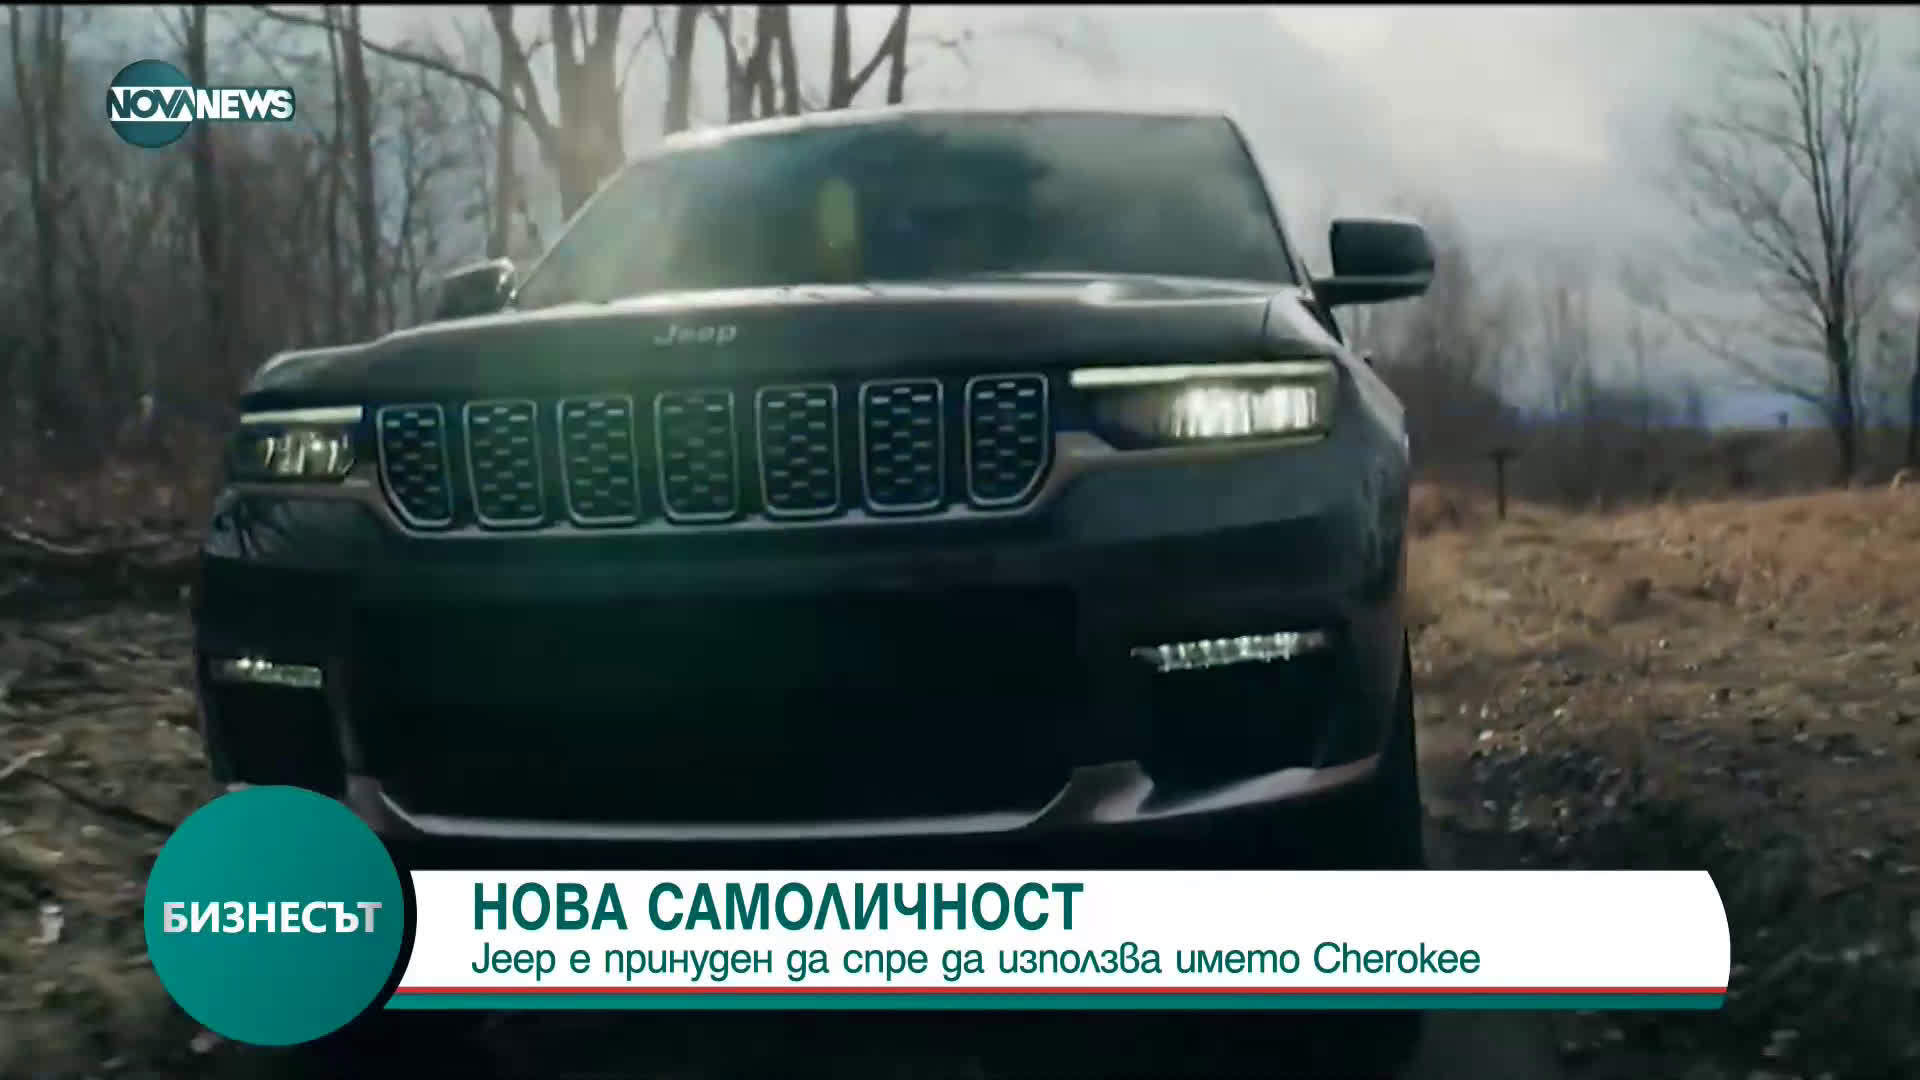 Jeep е принуден да спре да използва името Cherokee